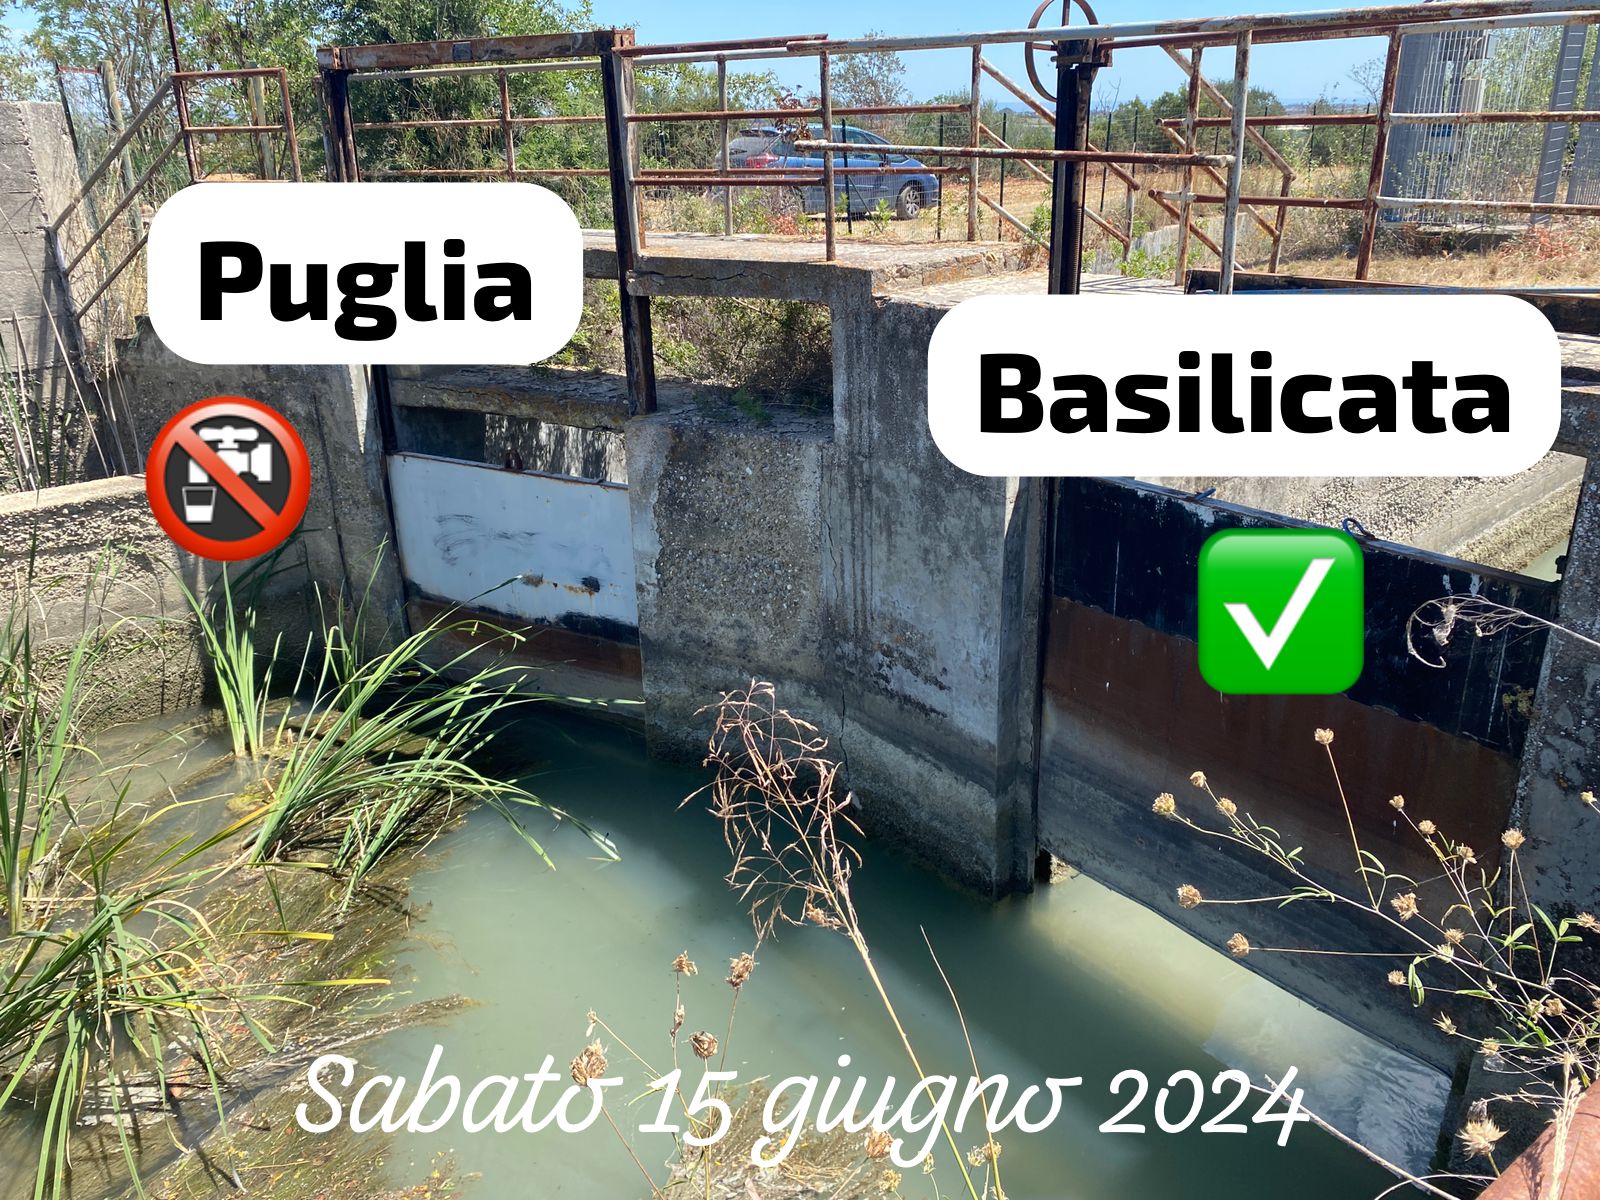 Acqua dalla diga lucana: “canali a secco nel tarantino, in Basilicata no” VIDEO Cia Puglia: "totale chiusura" della paratoia"